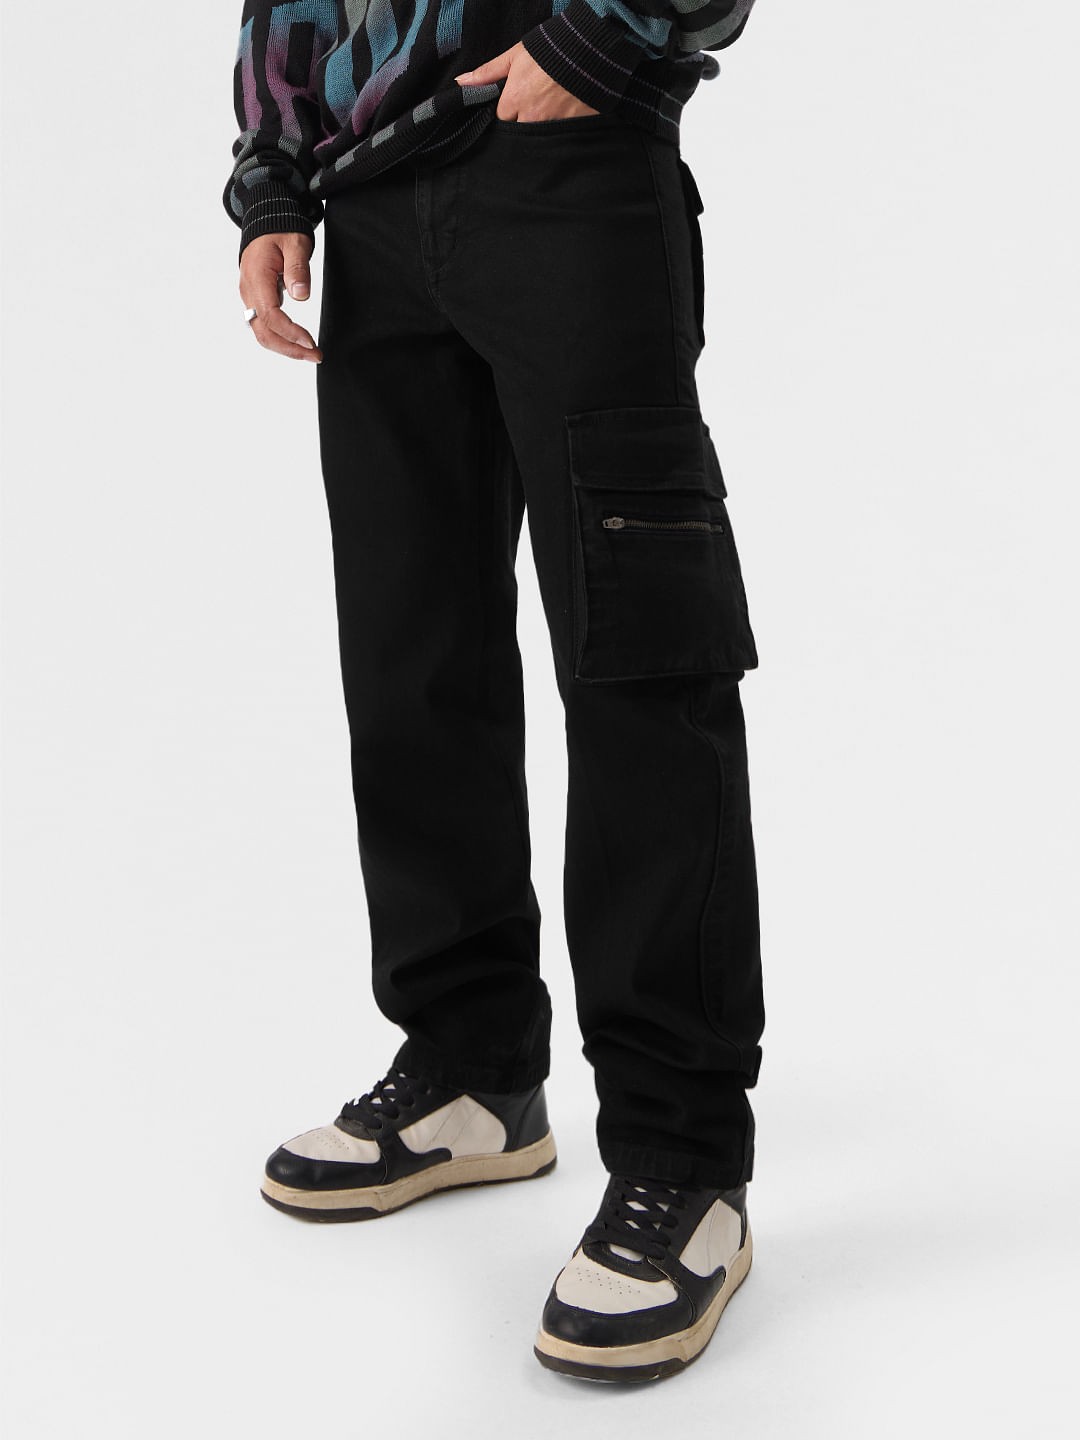 Buy Solids: Black (Cargo) Men Cargo Jeans Online